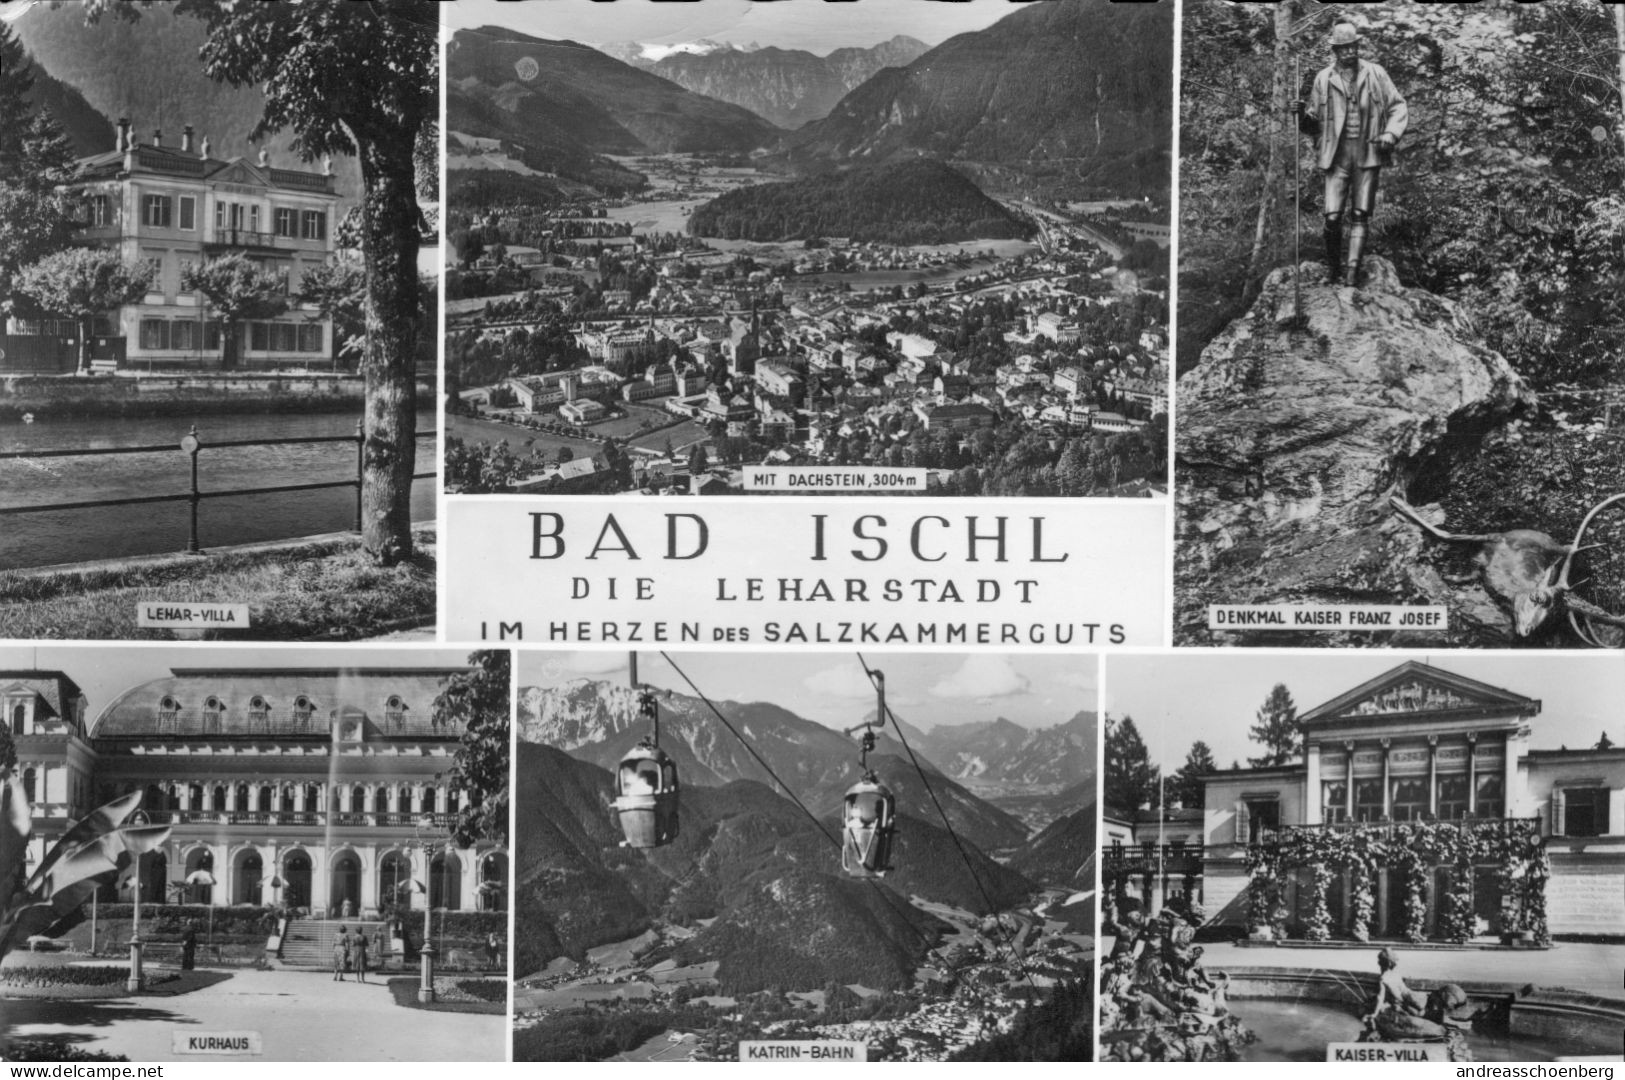 Bad Ischl - Bad Ischl